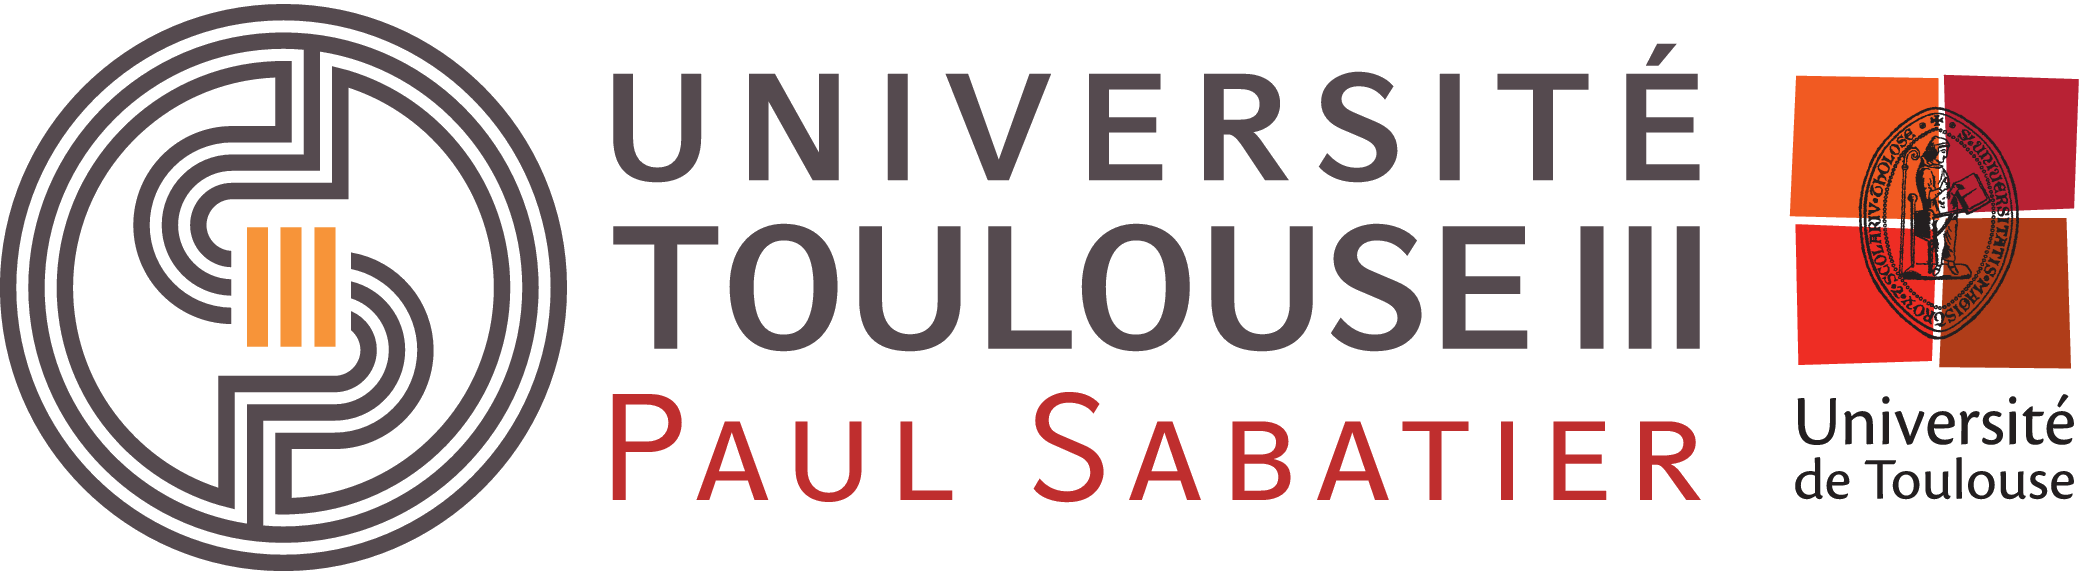 Université Toulous III - Paul Sabatier